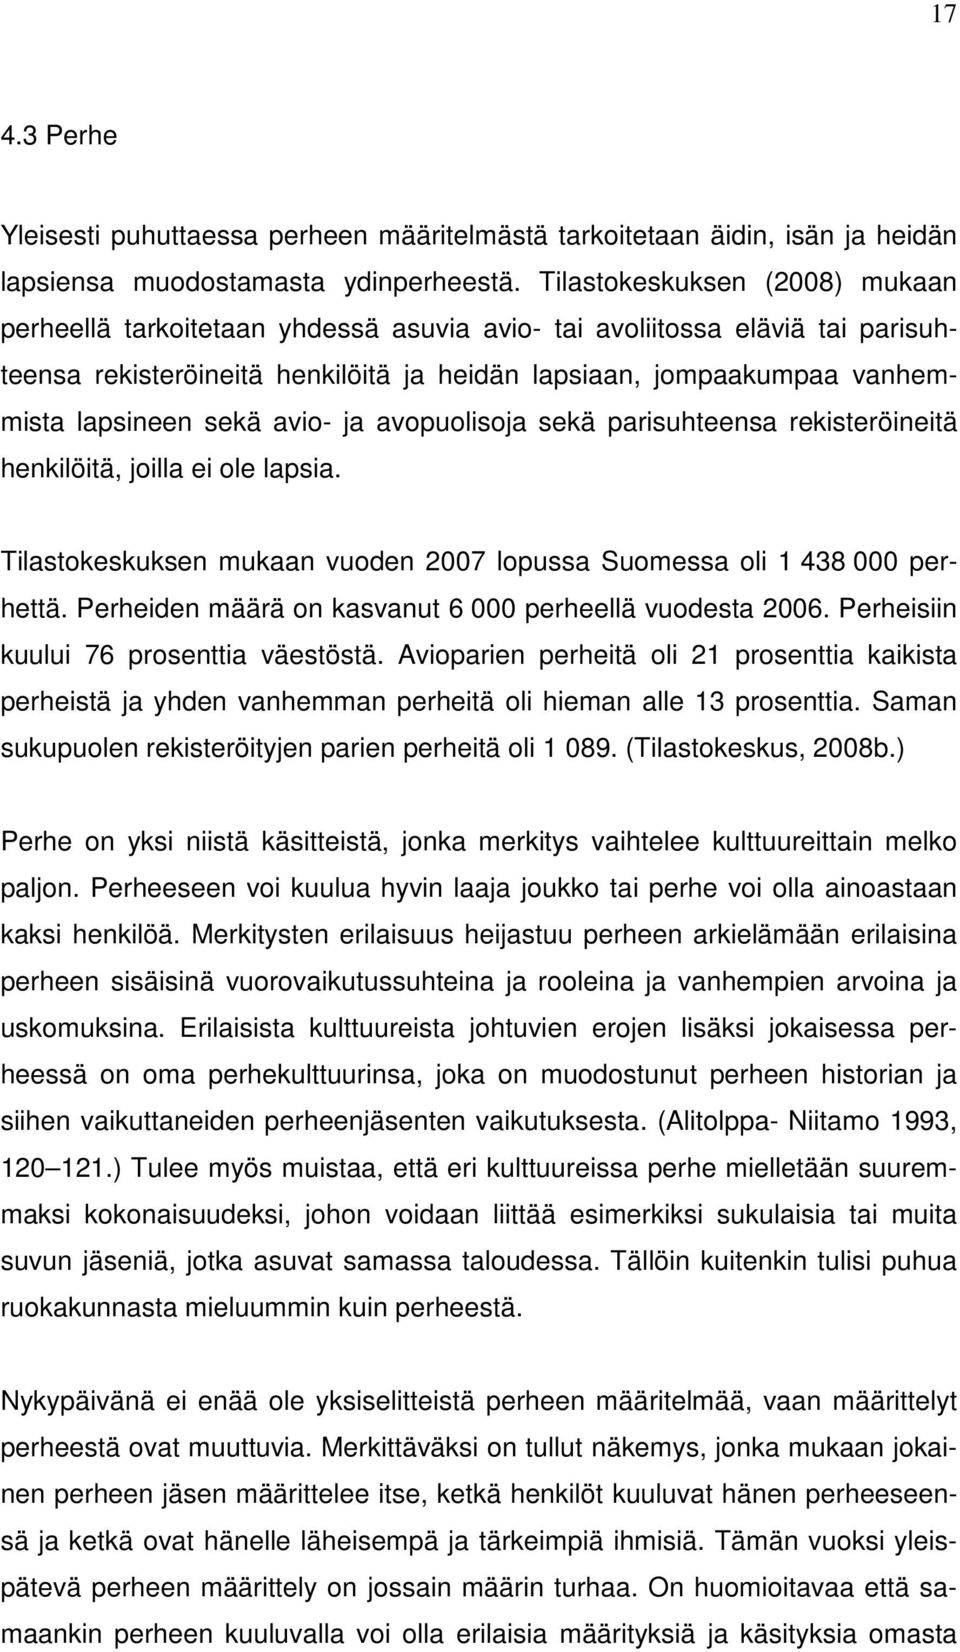 sekä avio- ja avopuolisoja sekä parisuhteensa rekisteröineitä henkilöitä, joilla ei ole lapsia. Tilastokeskuksen mukaan vuoden 2007 lopussa Suomessa oli 1 438 000 perhettä.